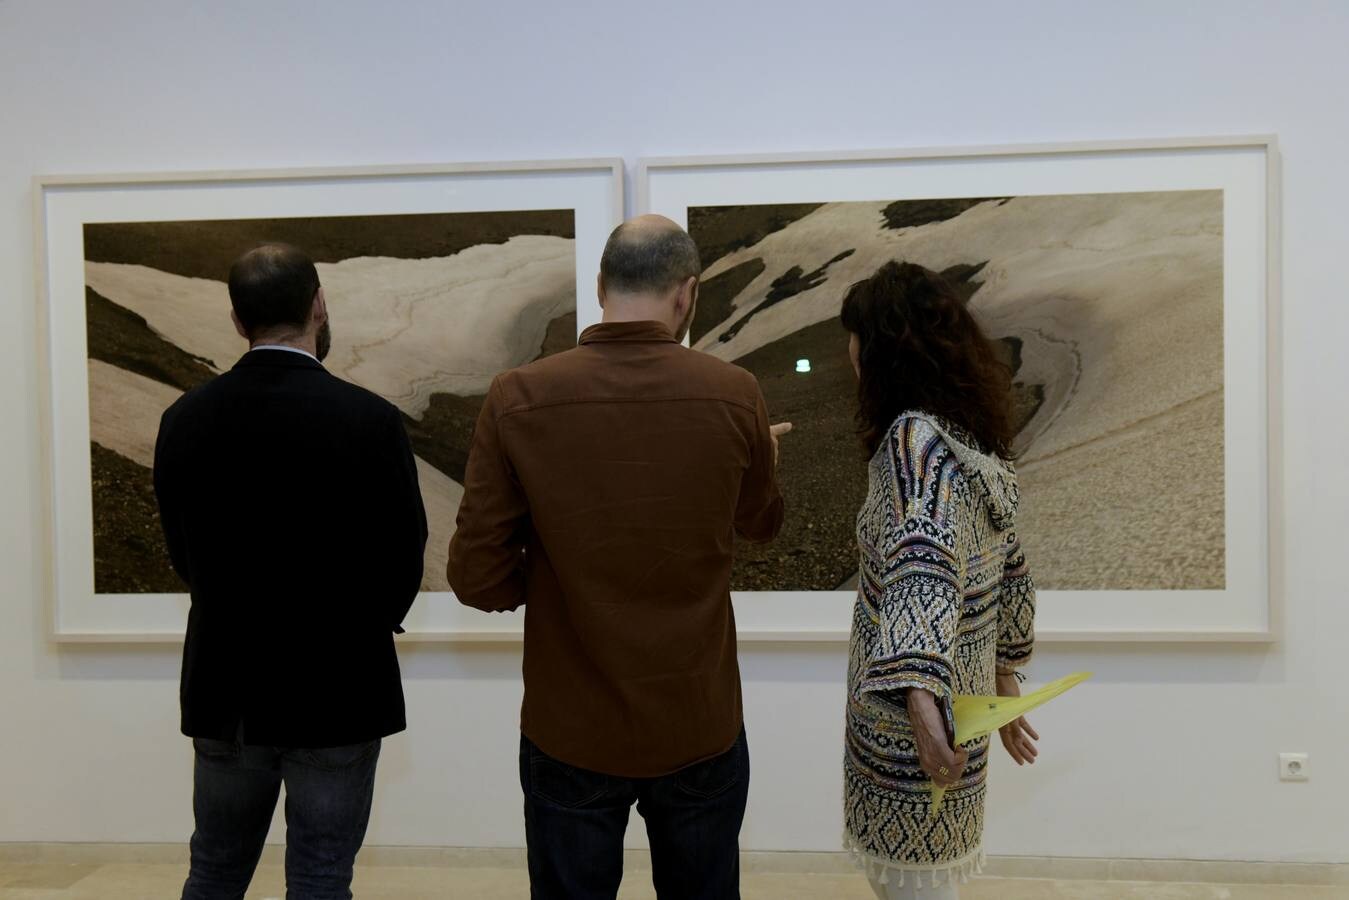 El fotófrafo José Guerrero y el pintor Nico Munuera presentan la exposición 'Paisajes del límite' en el Patio Herreriano de Valladolid.